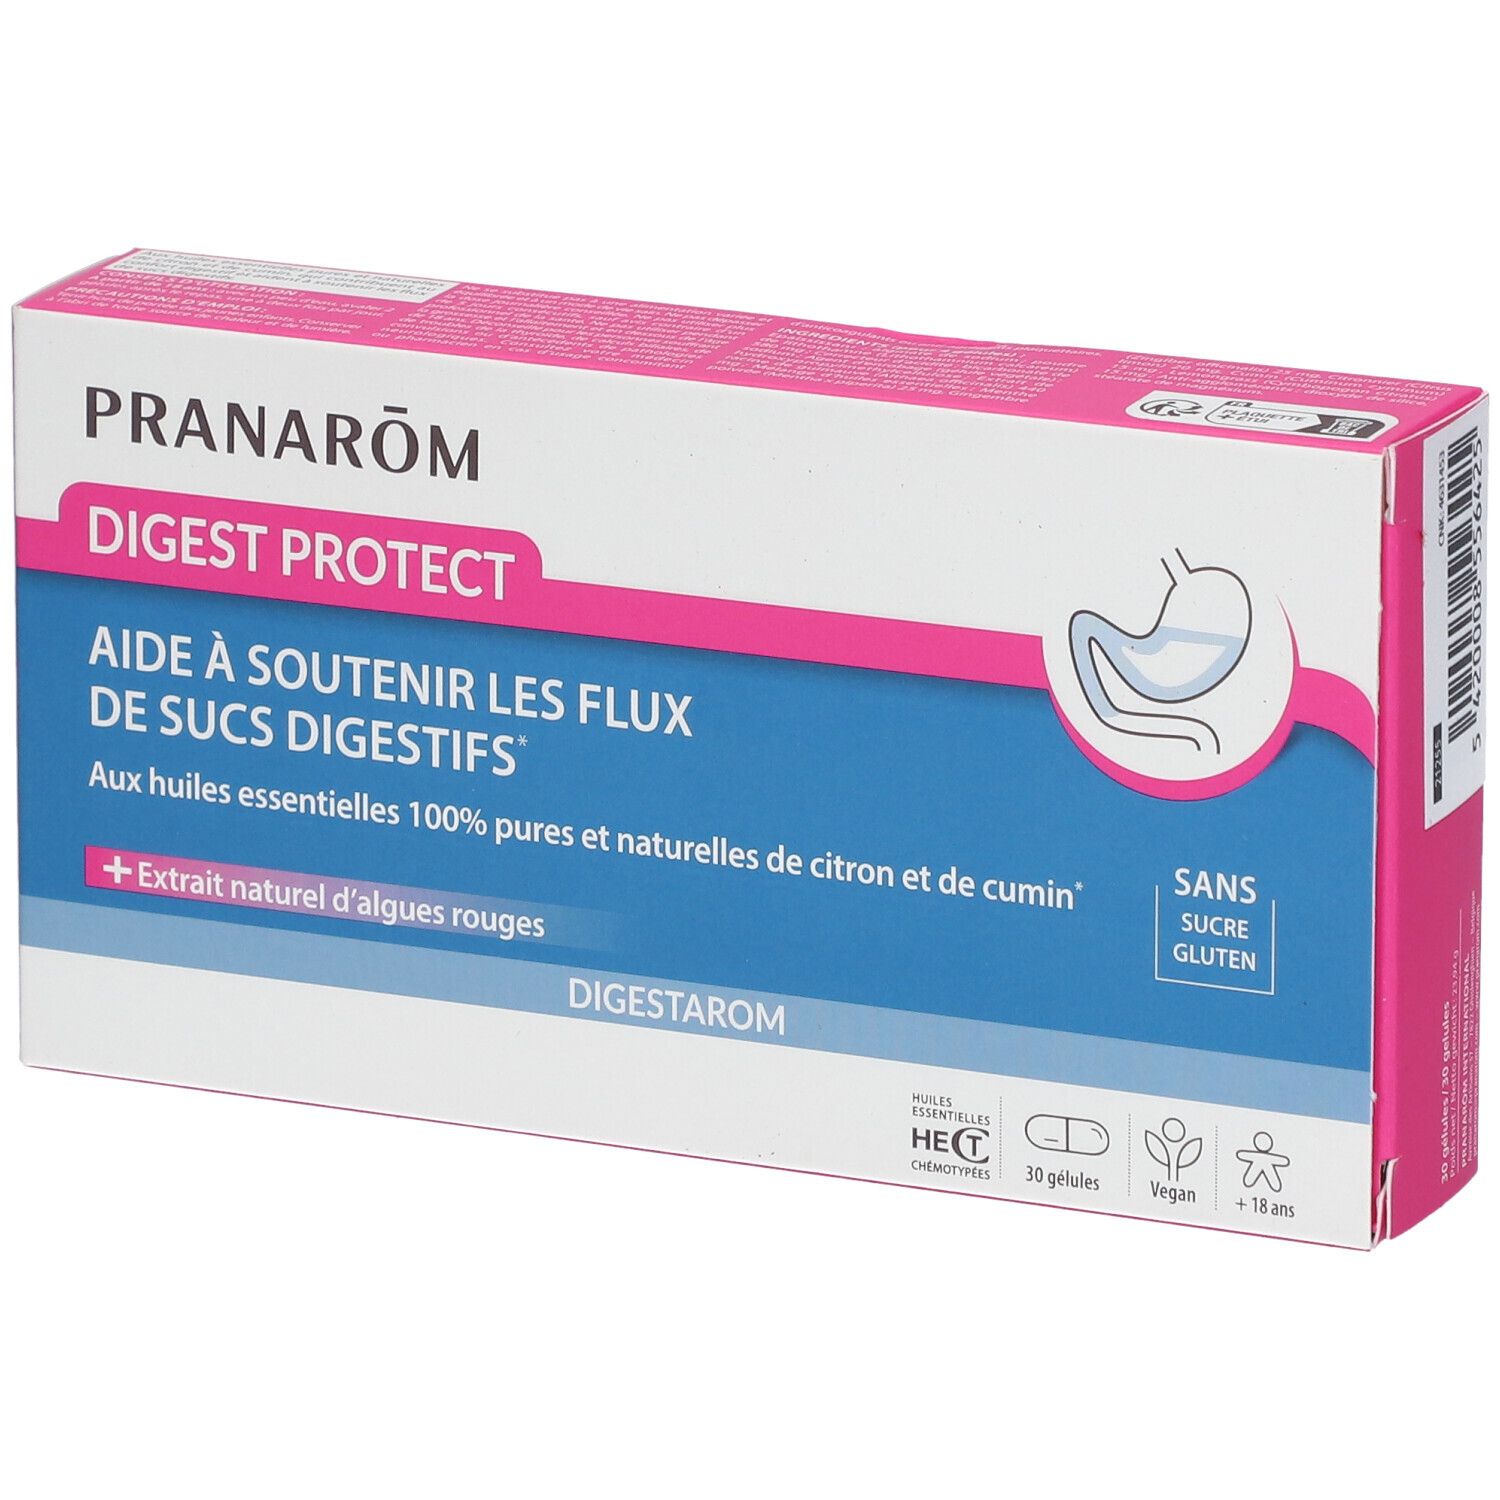 Pranarôm - Digestarom - Digest Protect - Soutient Les Flux De Sucs Digestifs - Huiles Essentielles D